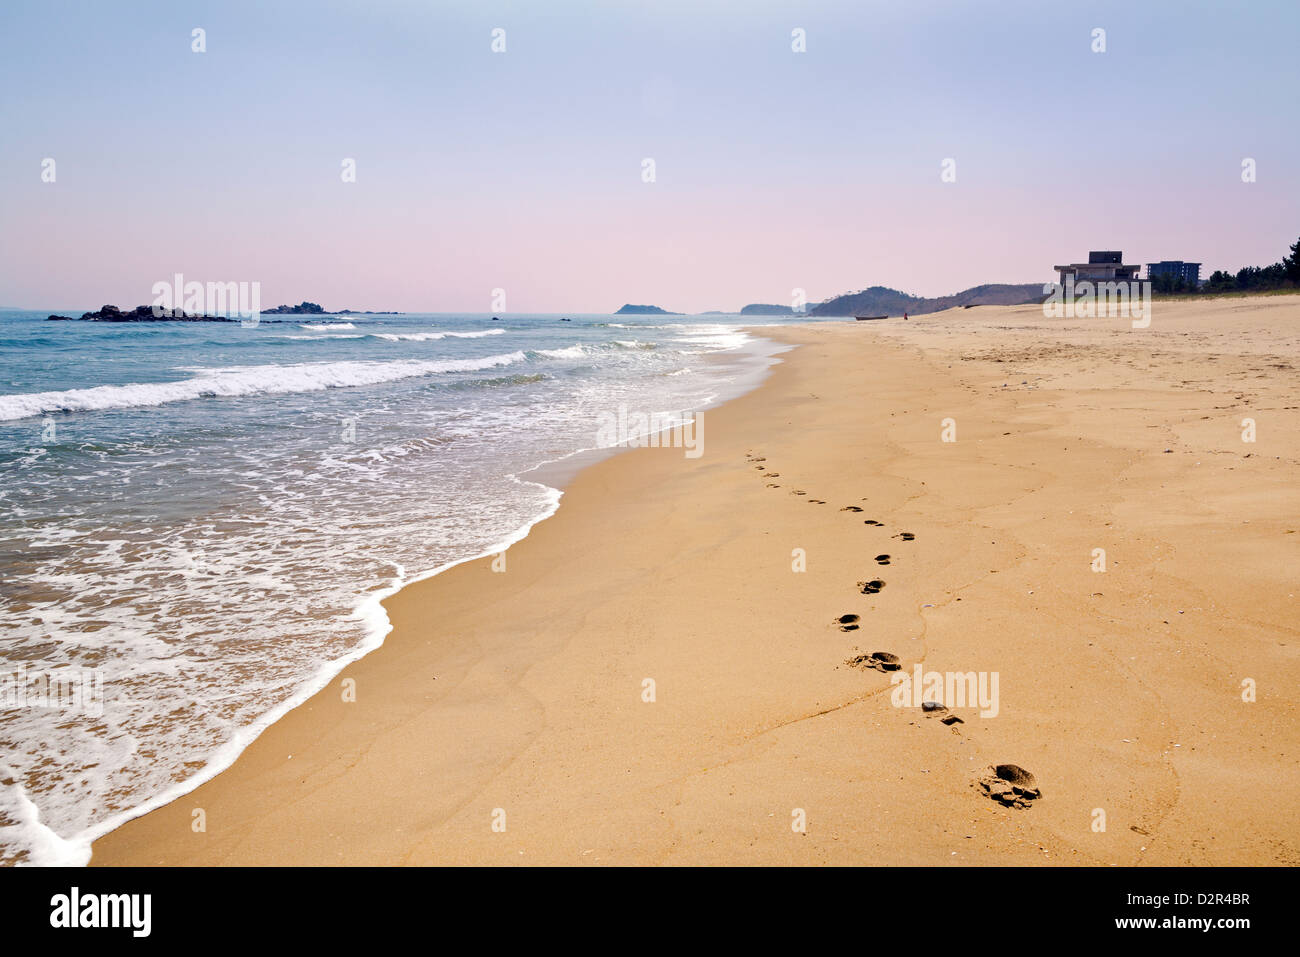 Beach resort Gegend südlich von Wonsan, Ost Meer von Korea, Demokratische Volksrepublik Korea (DVRK), Nord Korea, Asien Stockfoto